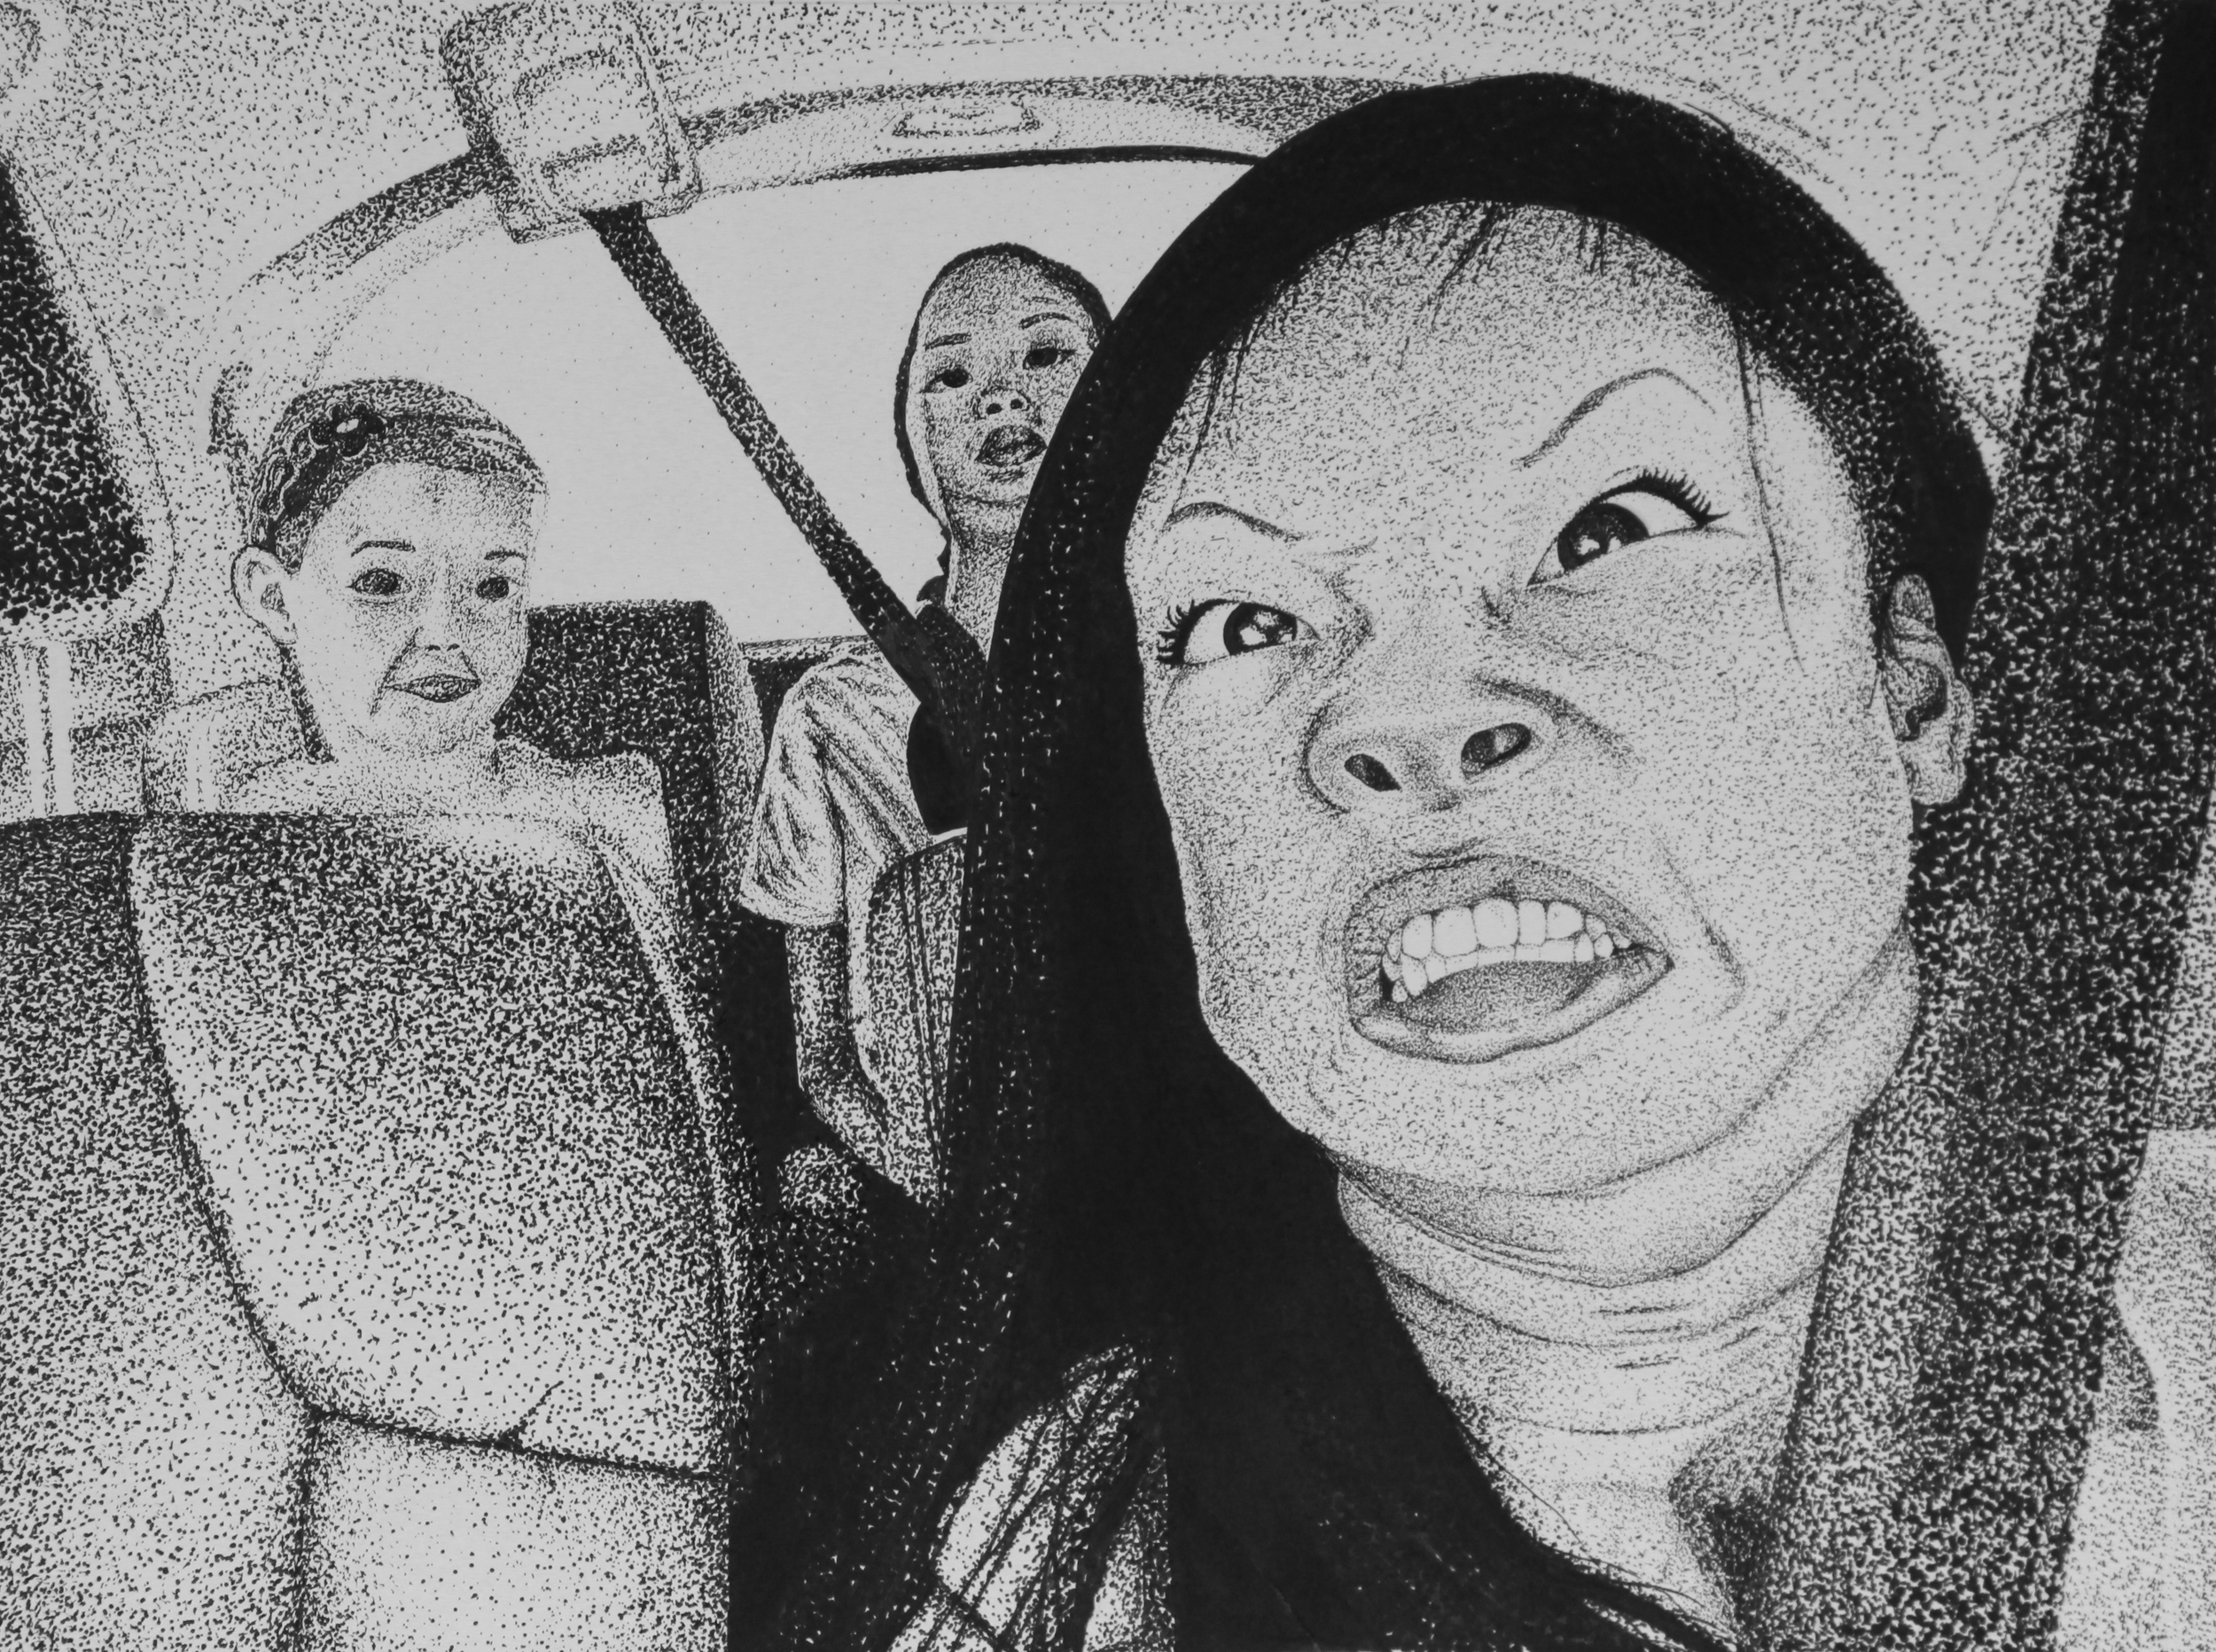 "Car Ride" by Jenna Trosian